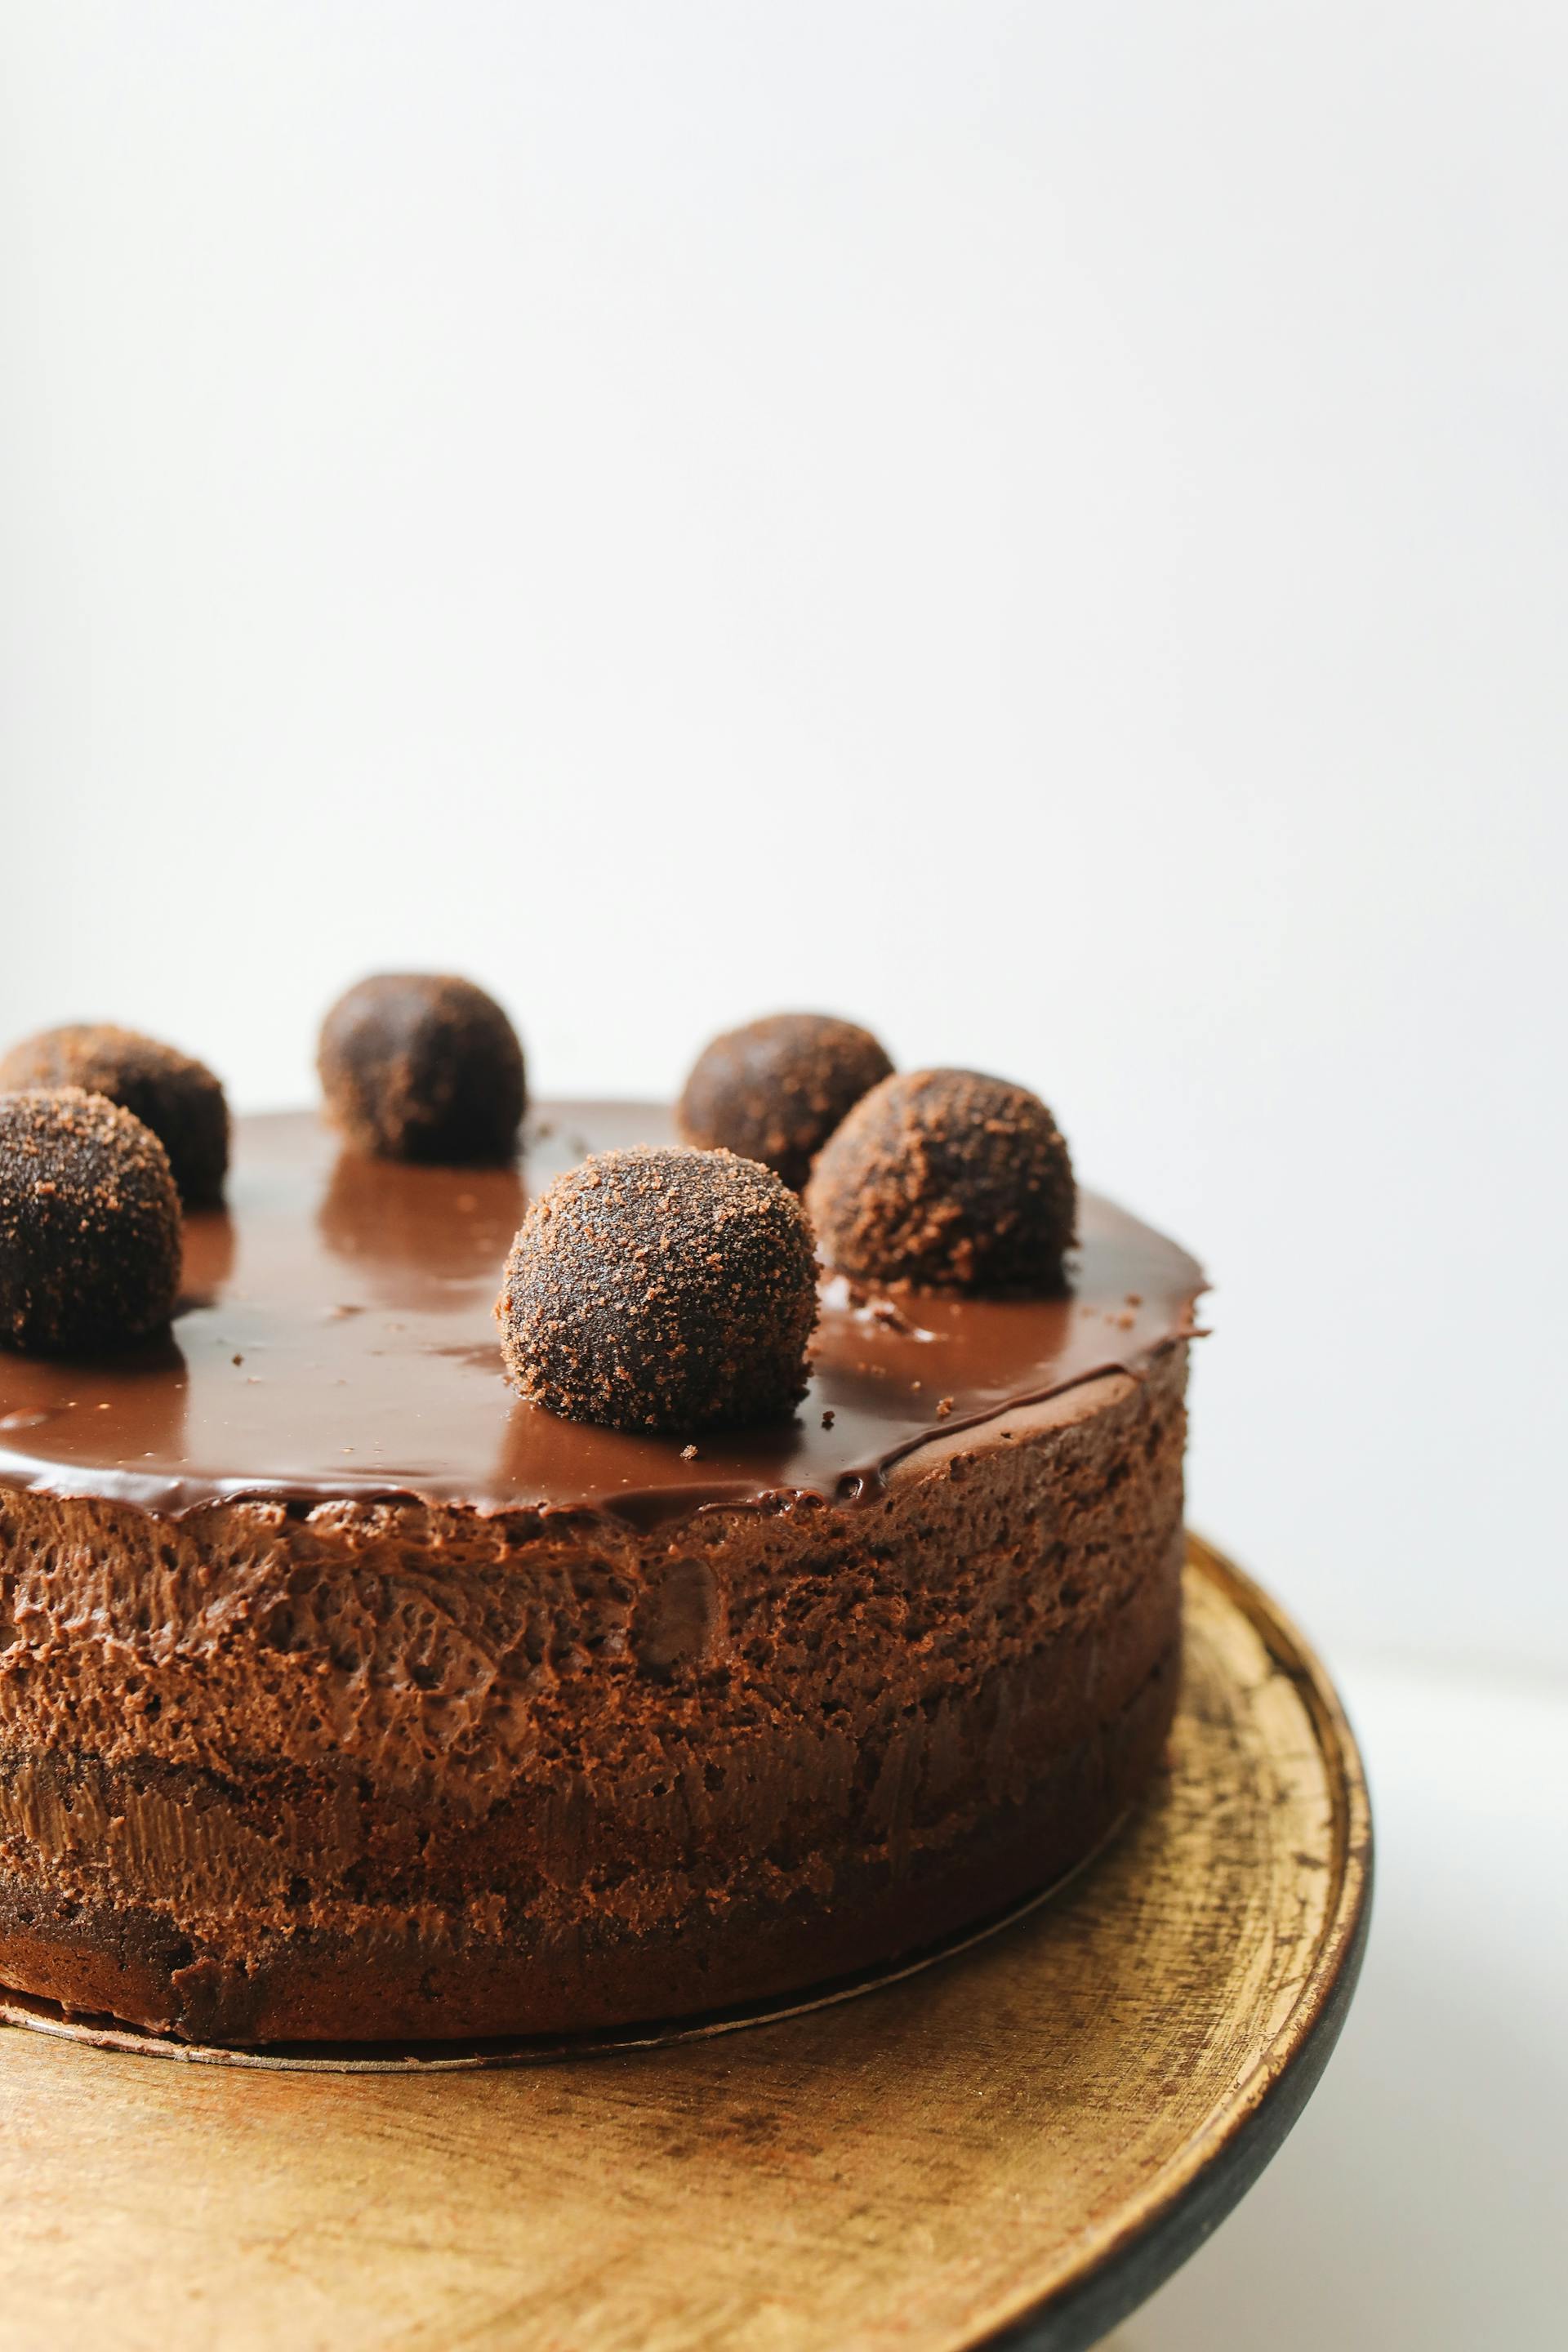 Gâteau au chocolat sur une planche | Source : Pexels